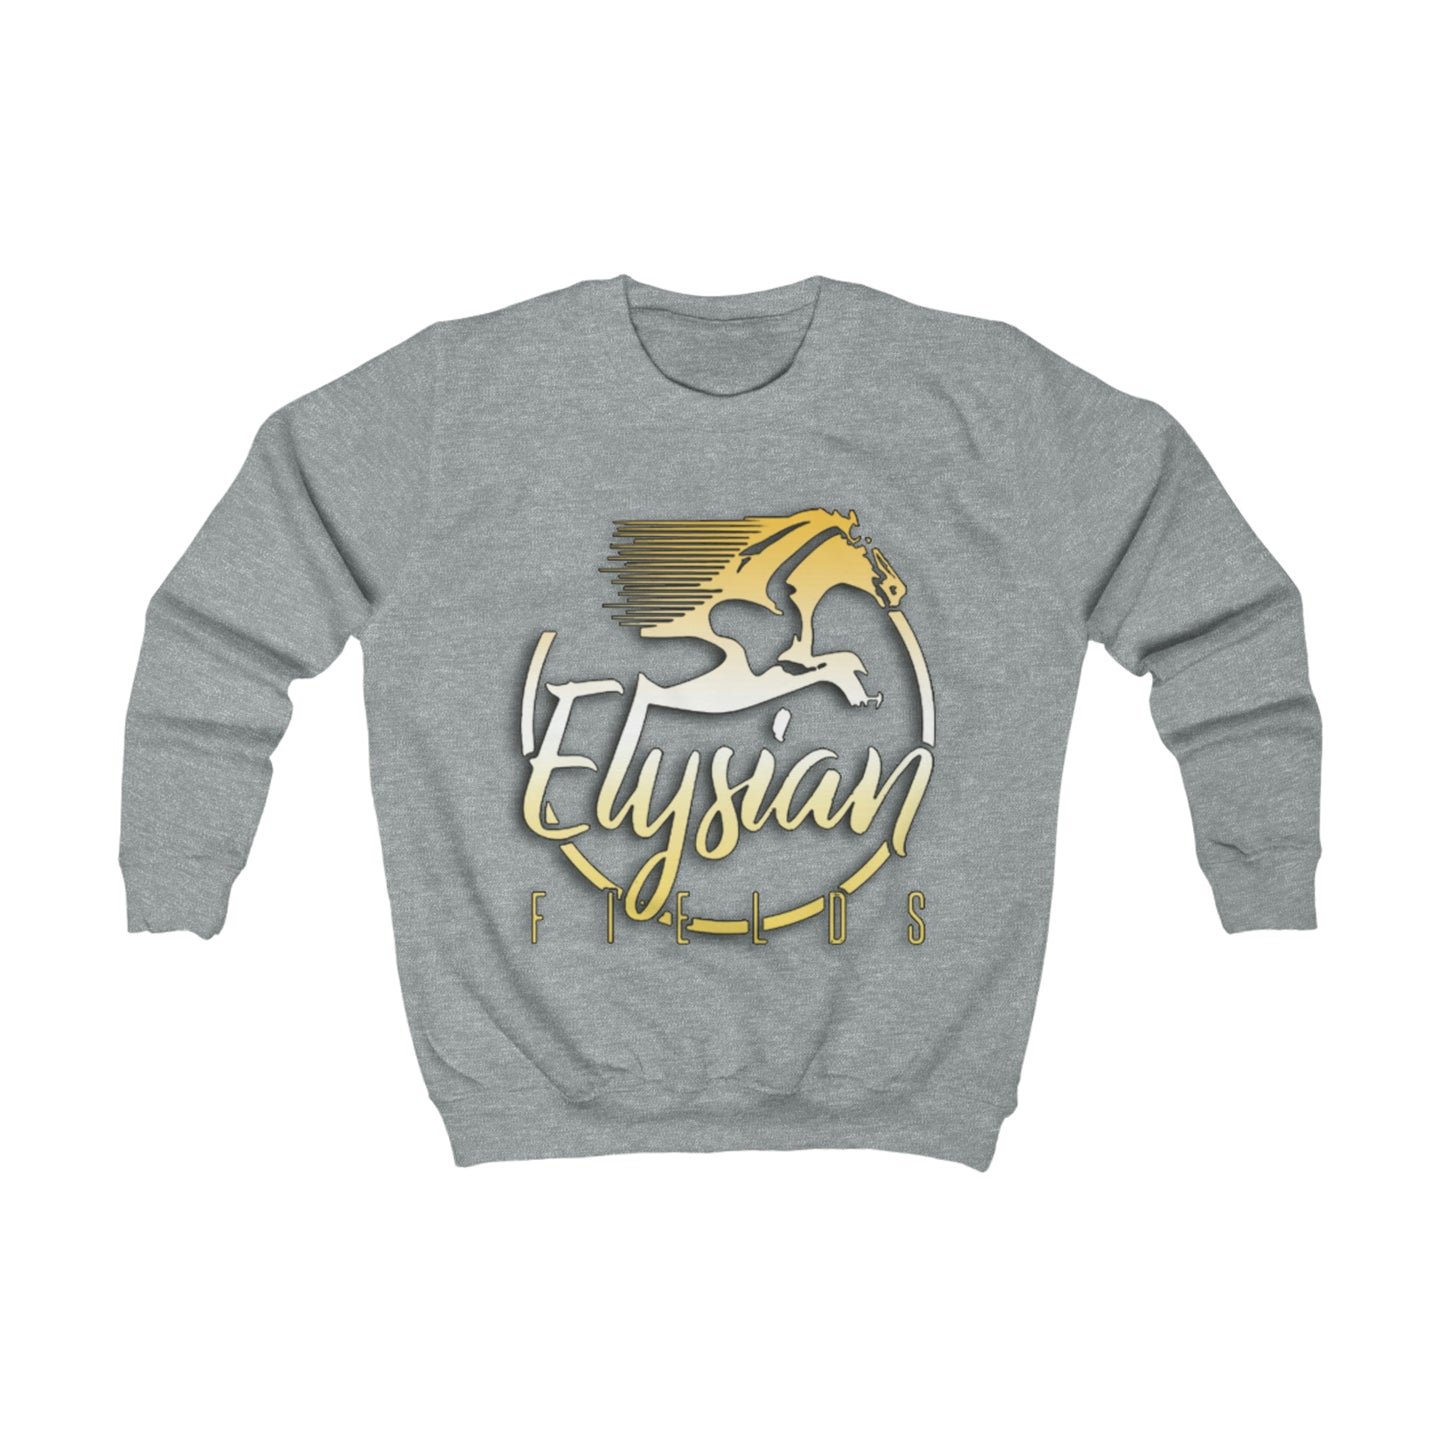 Elysian Fields - Kids Sweatshirt